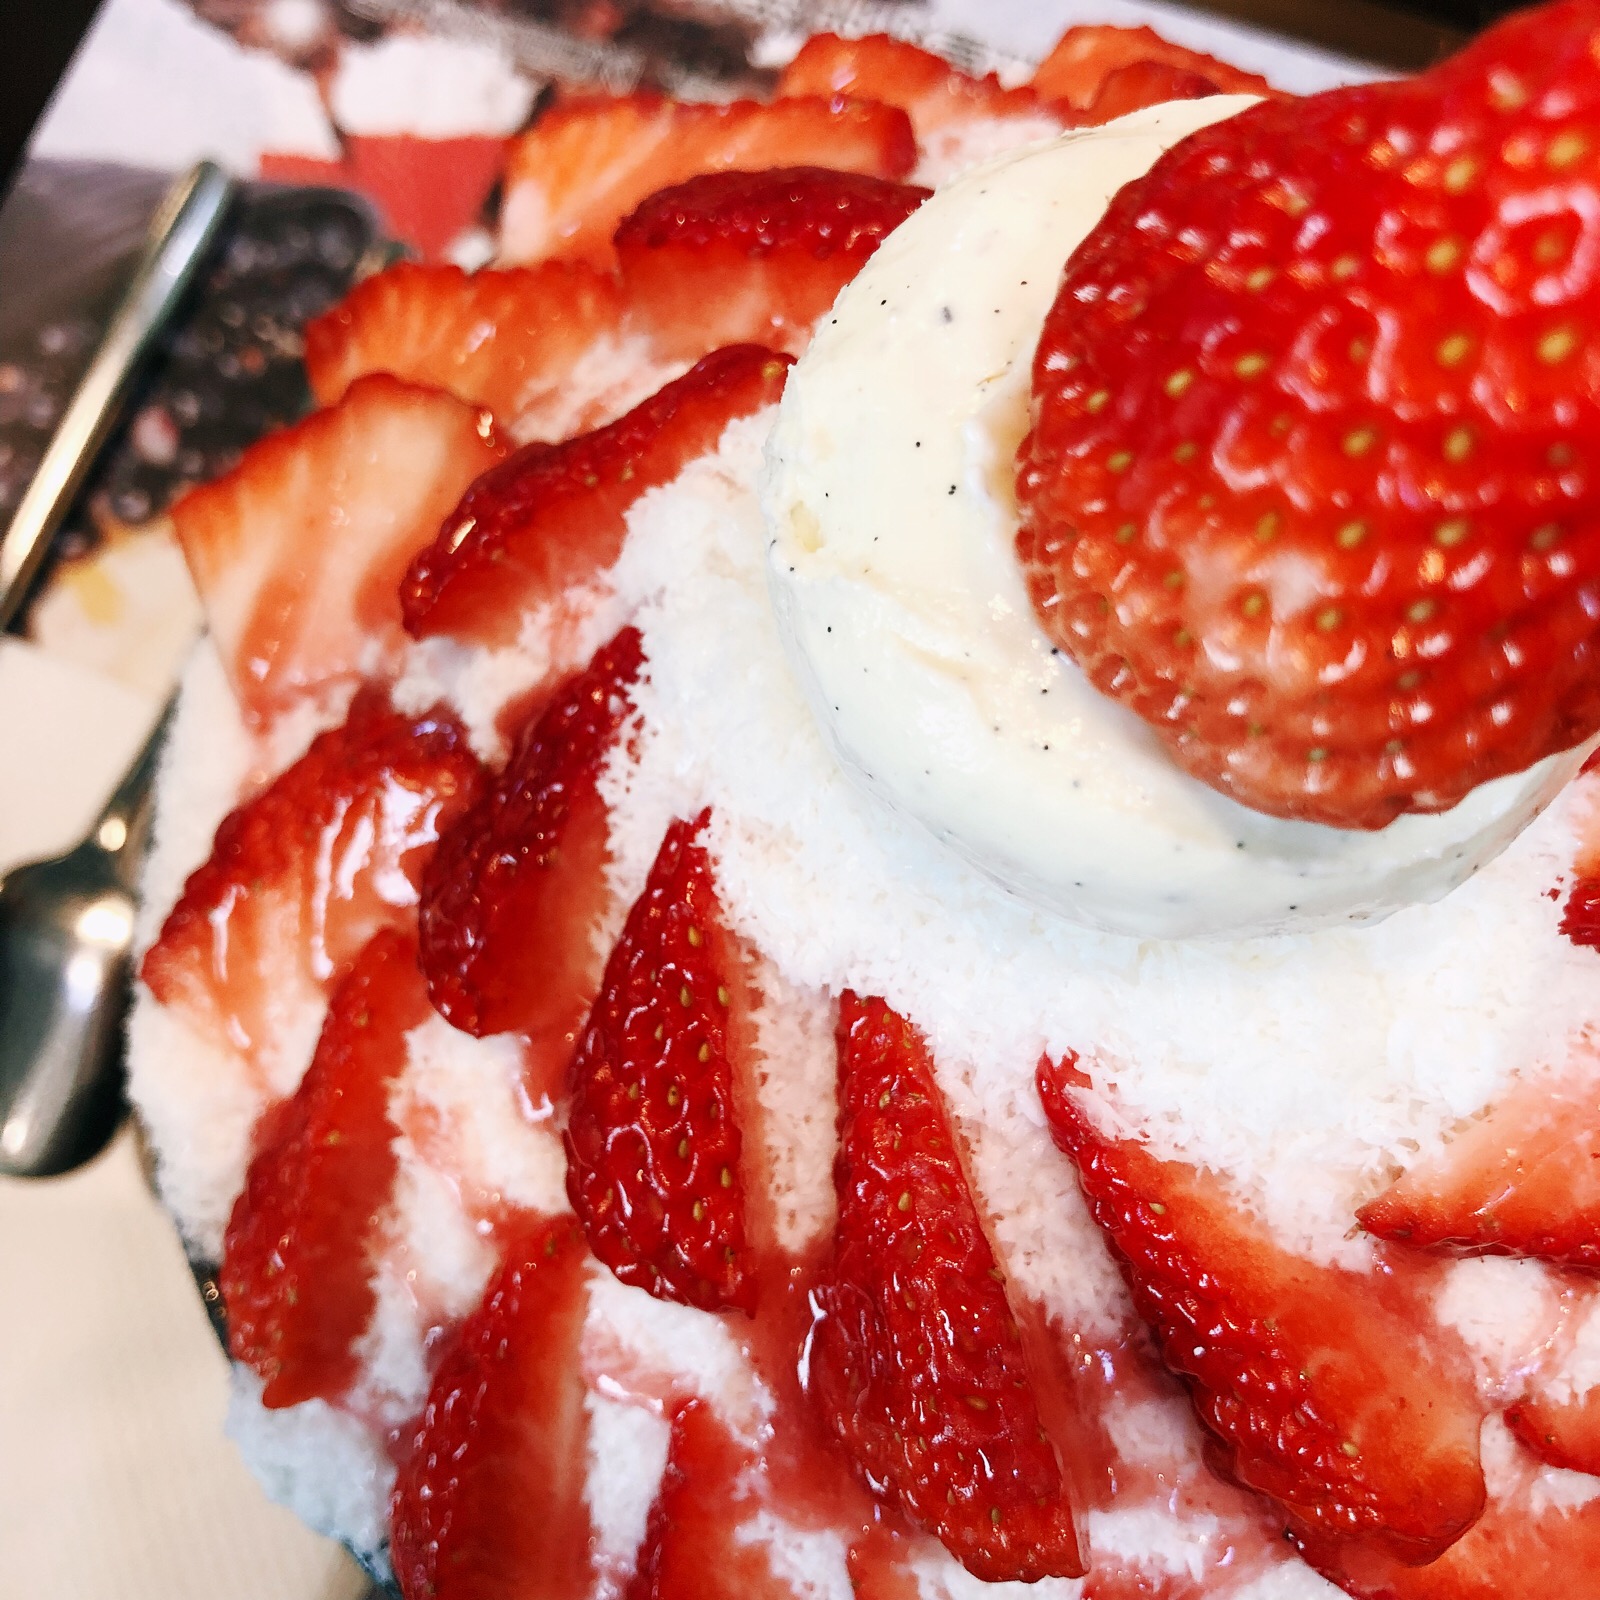 草莓牛奶冰不明海棠图片